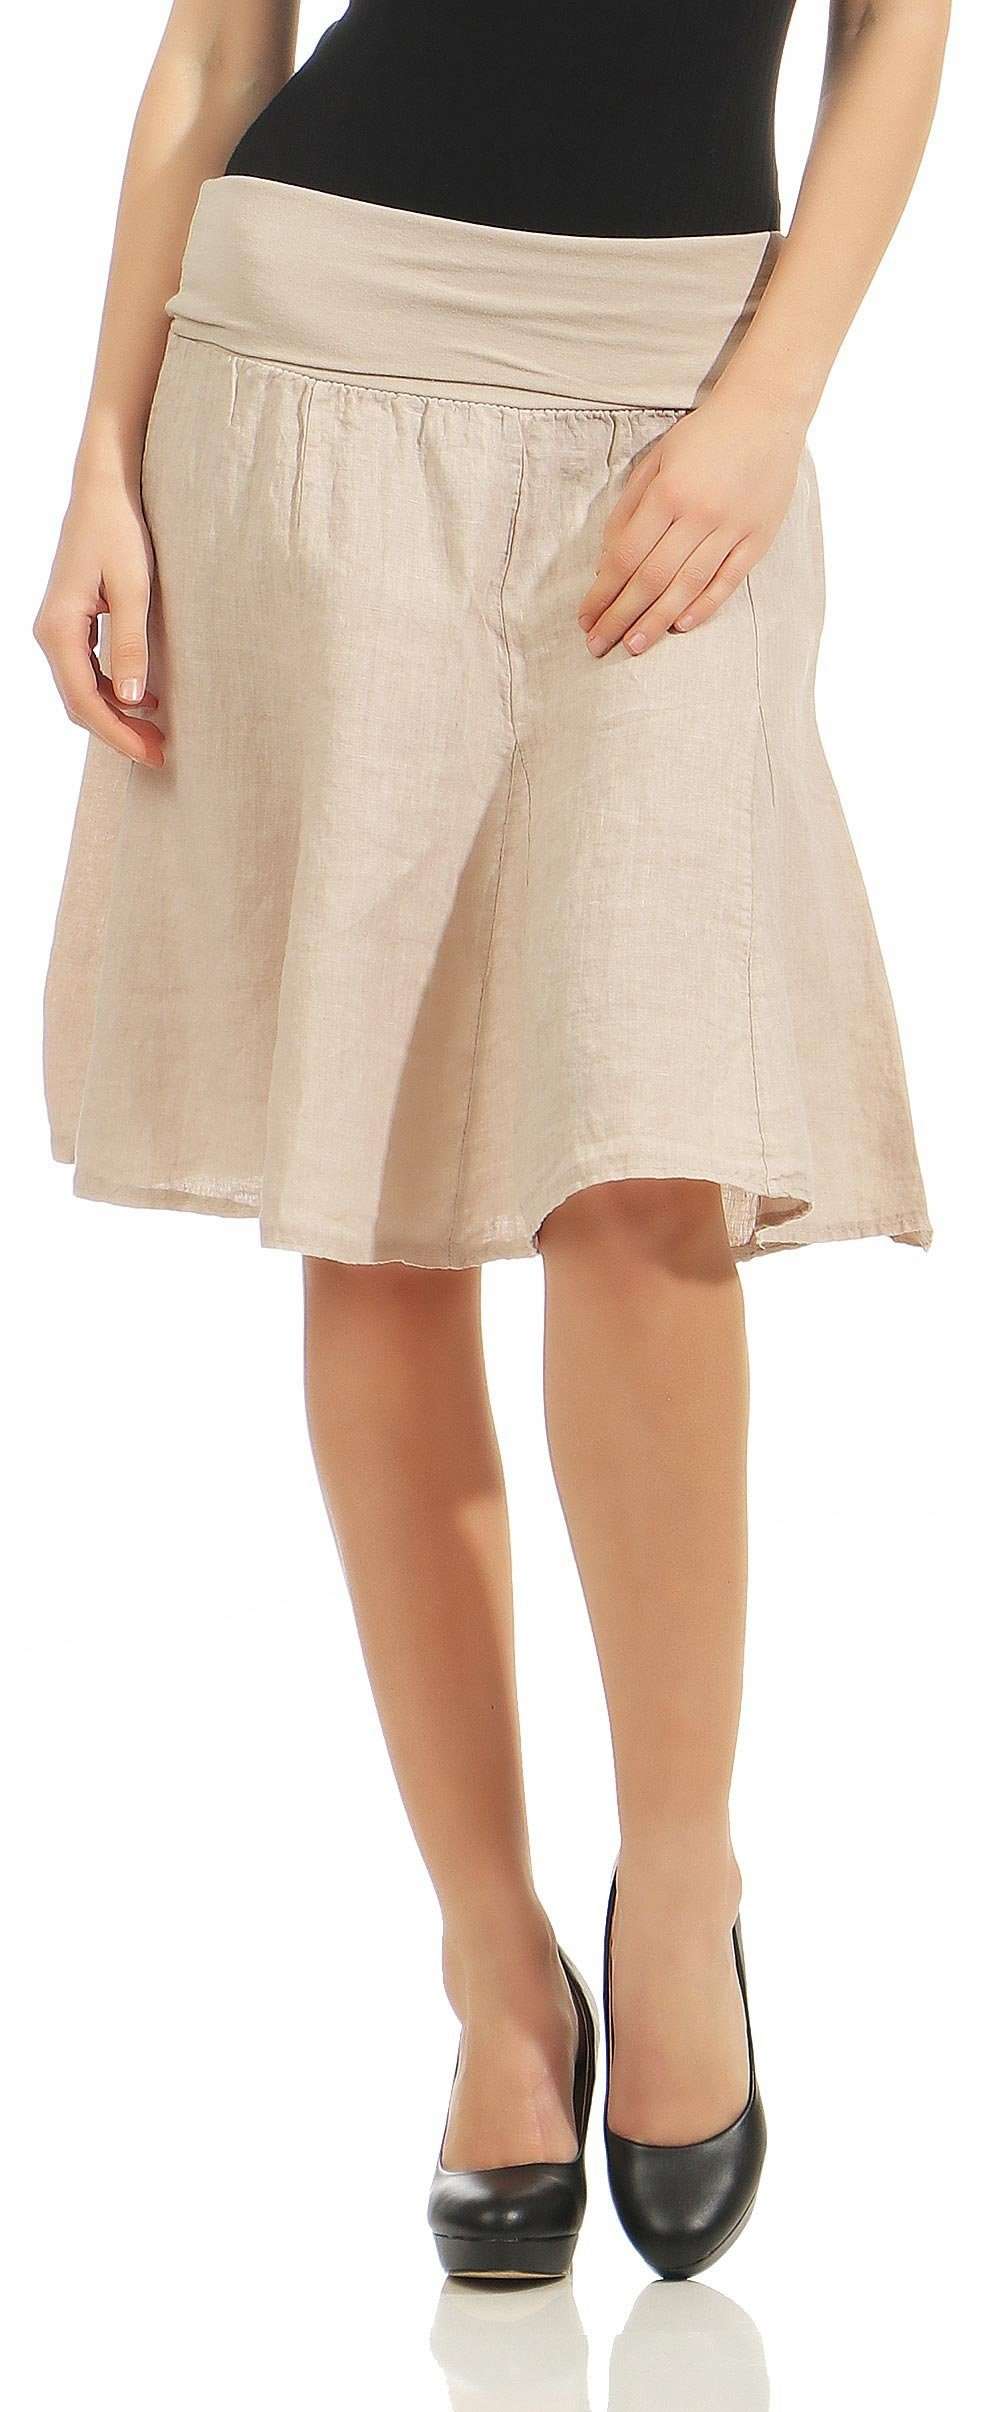 Летняя юбка 1580 юбка-колокольчик с трикотажным поясом